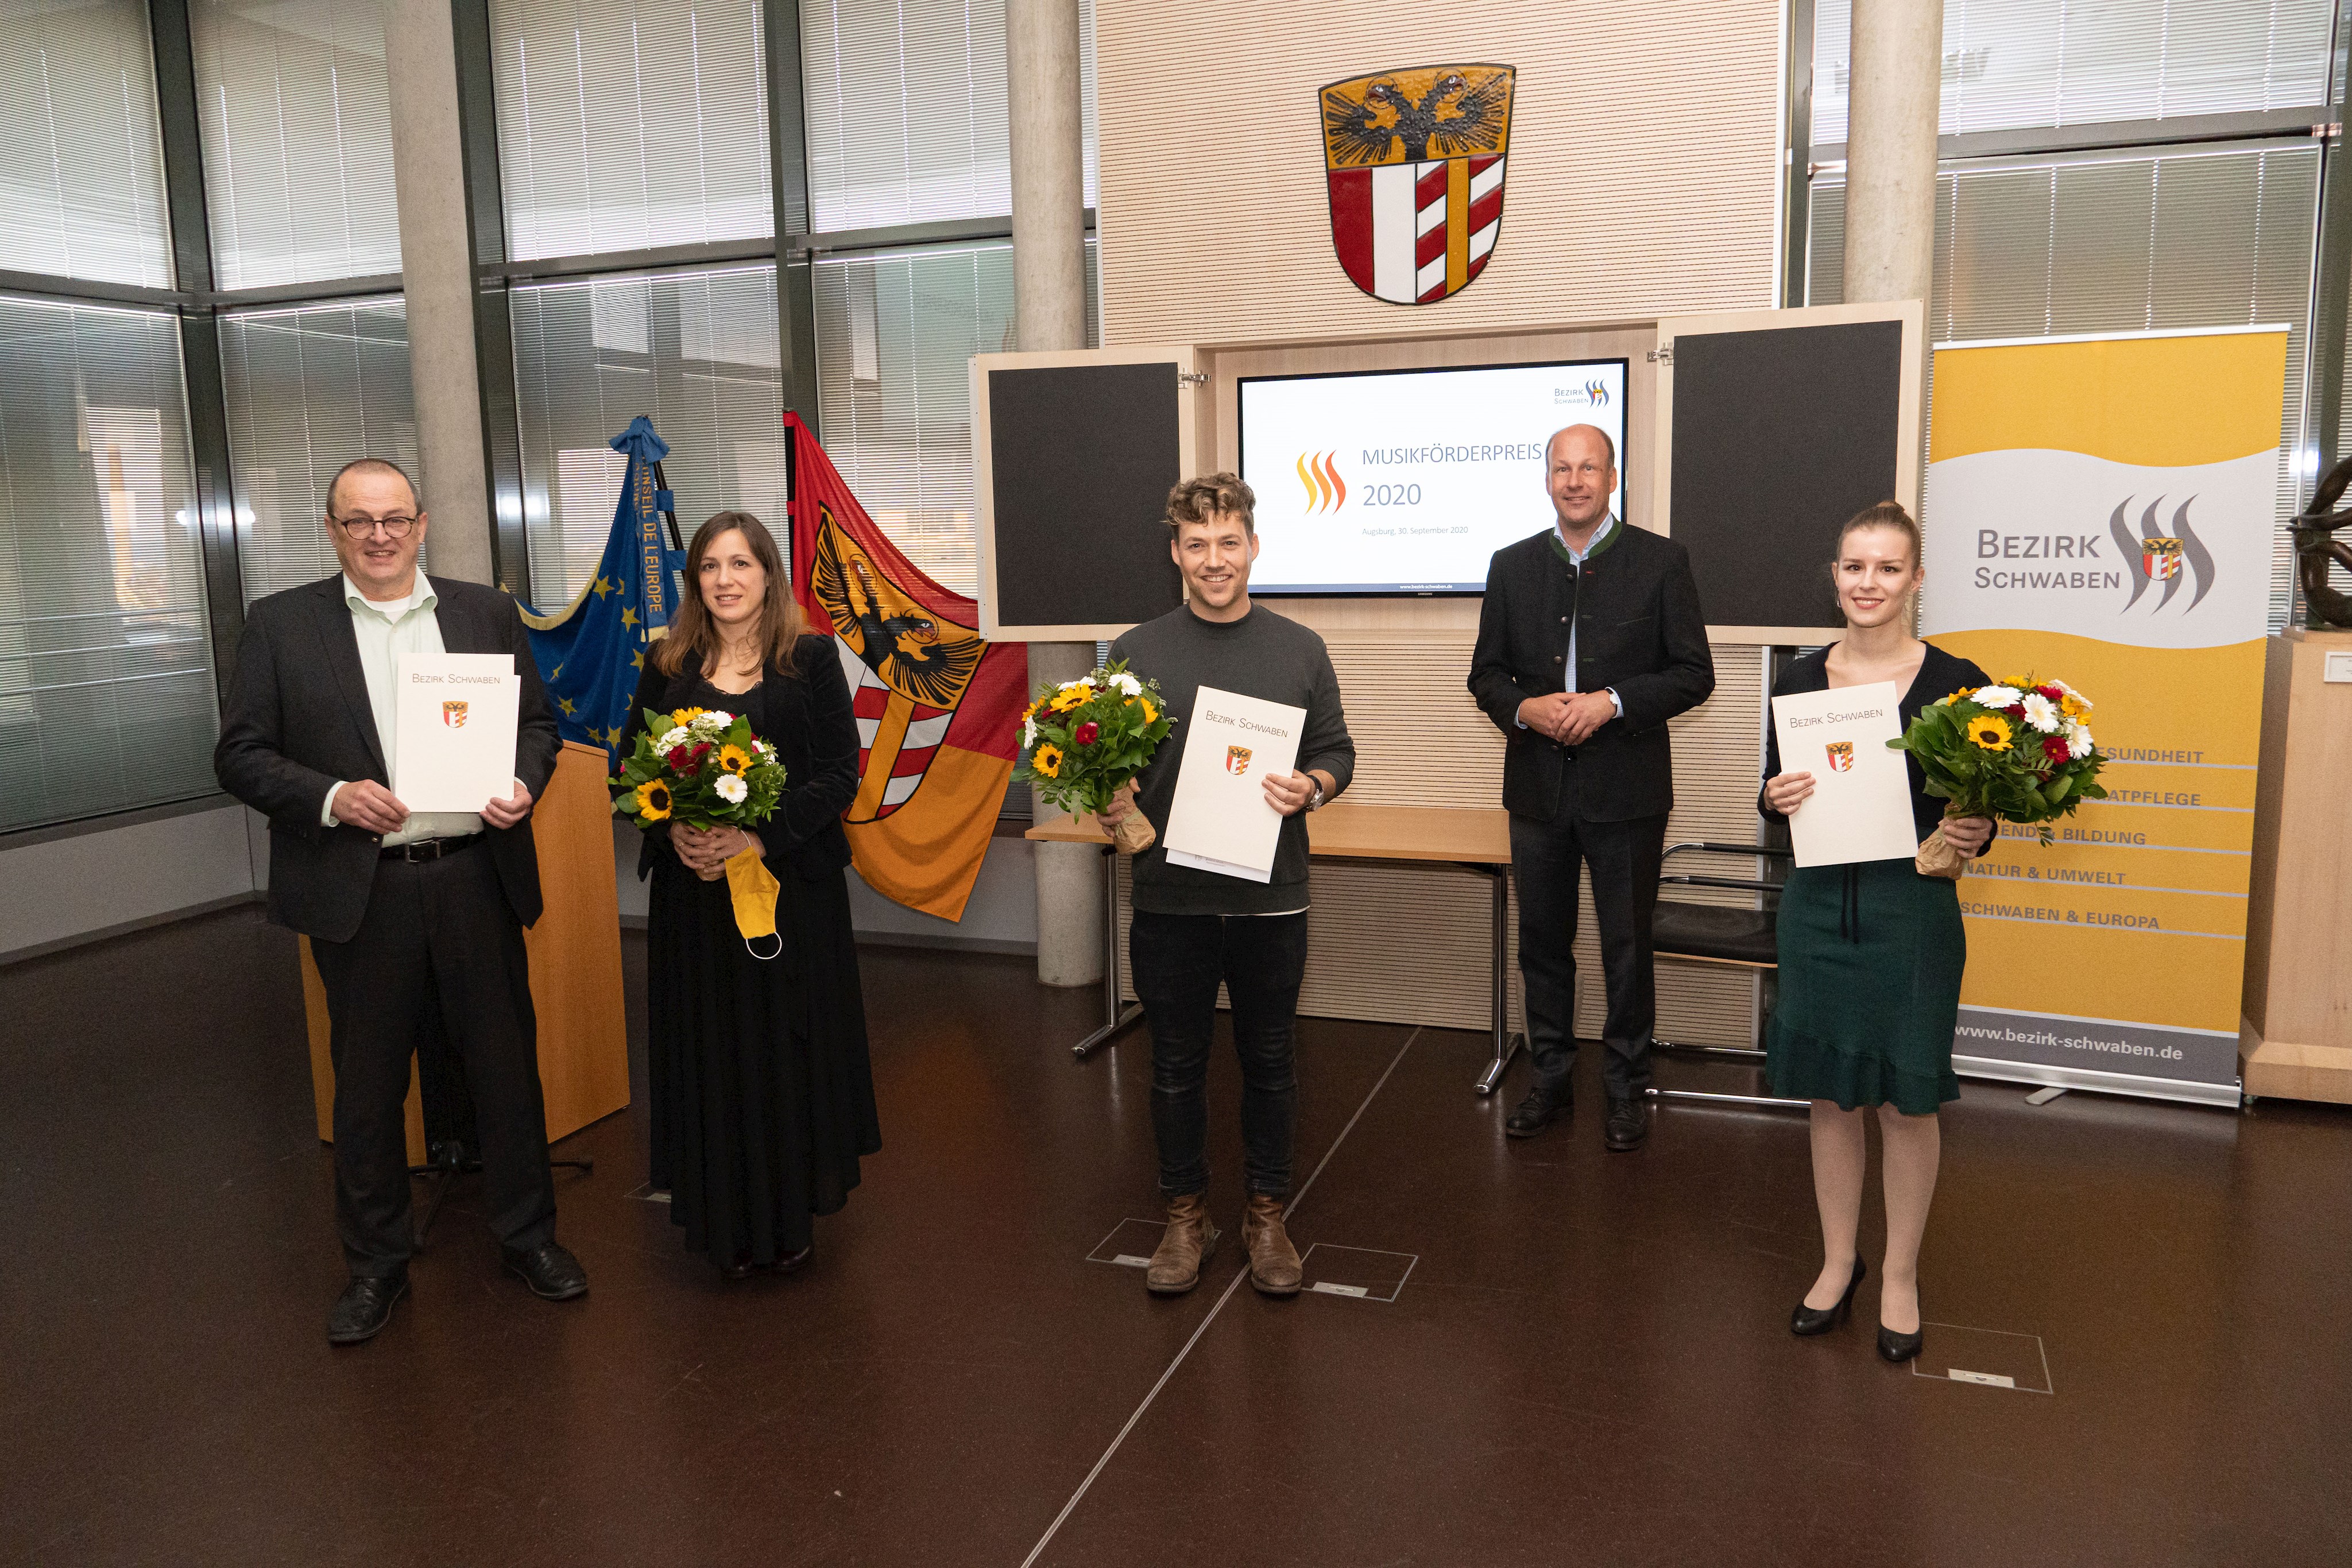 Bezirk verleiht Musikförderpreis: Künstler aus Schwaben geehrt